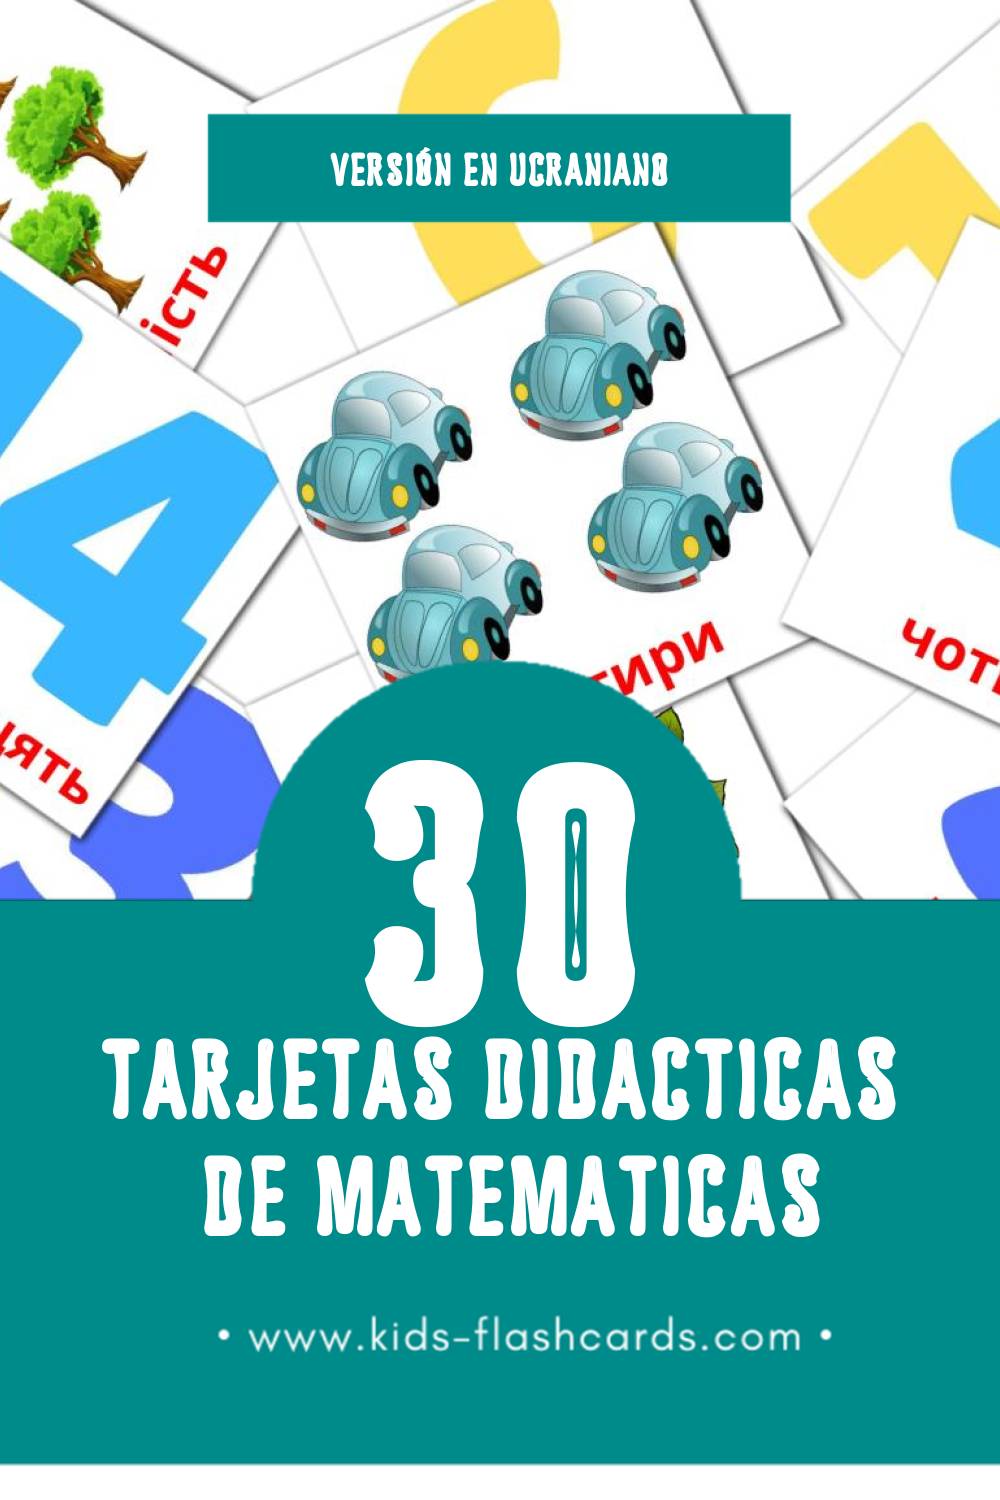 Tarjetas visuales de Математика para niños pequeños (30 tarjetas en Ucraniano)